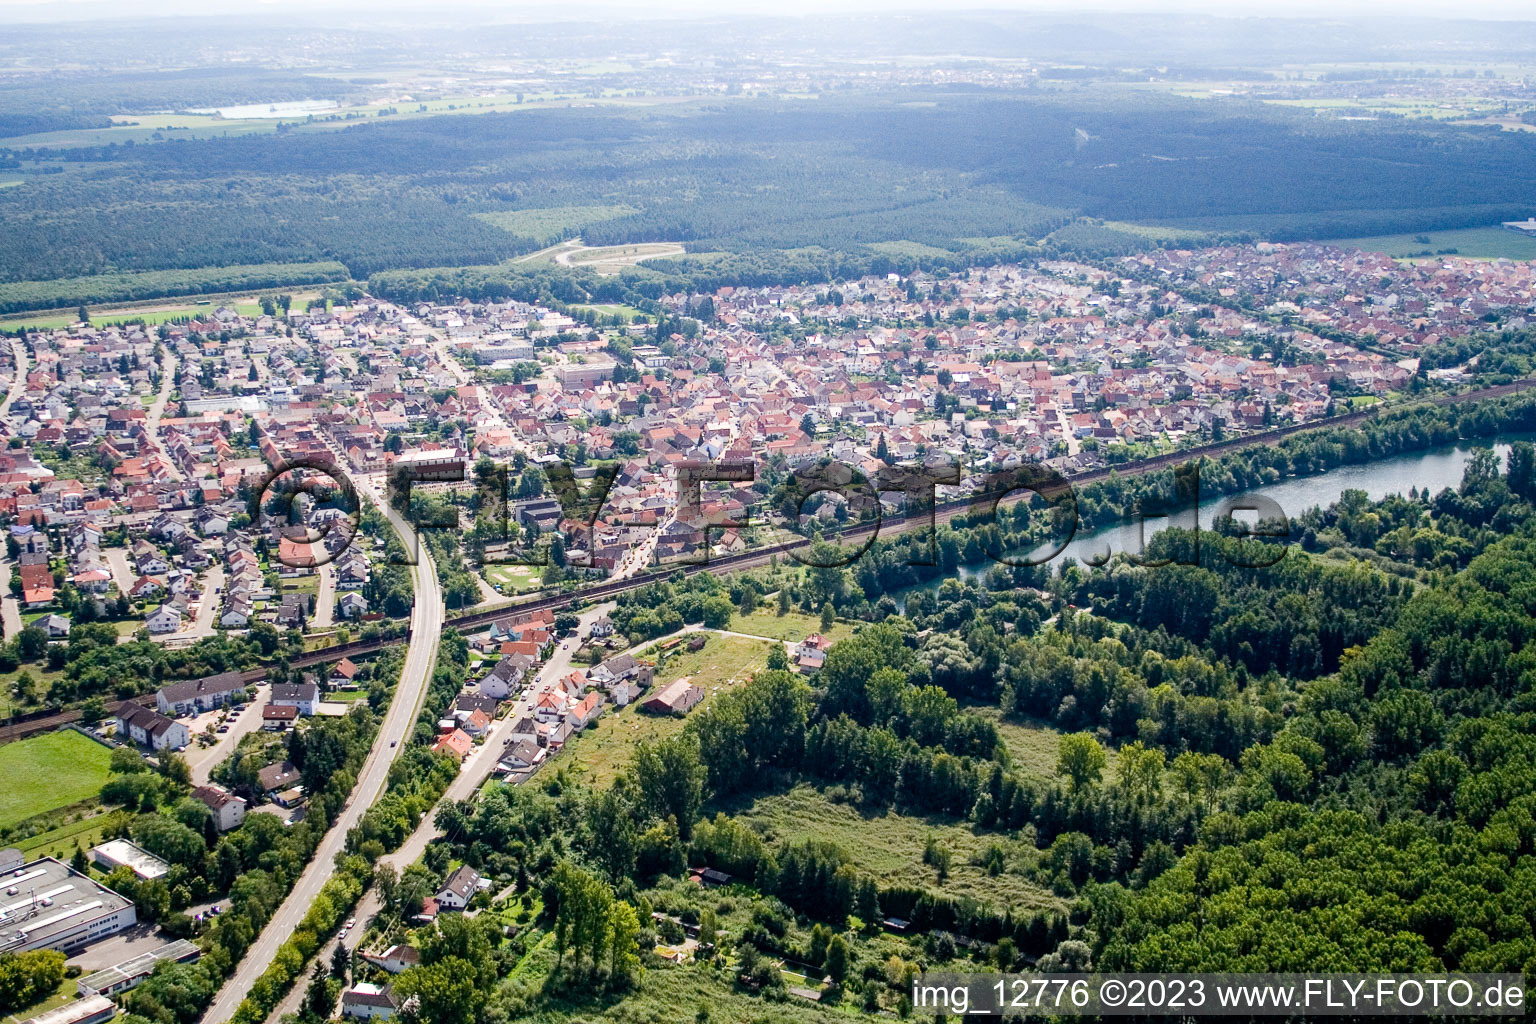 Photographie aérienne de Quartier Graben in Graben-Neudorf dans le département Bade-Wurtemberg, Allemagne